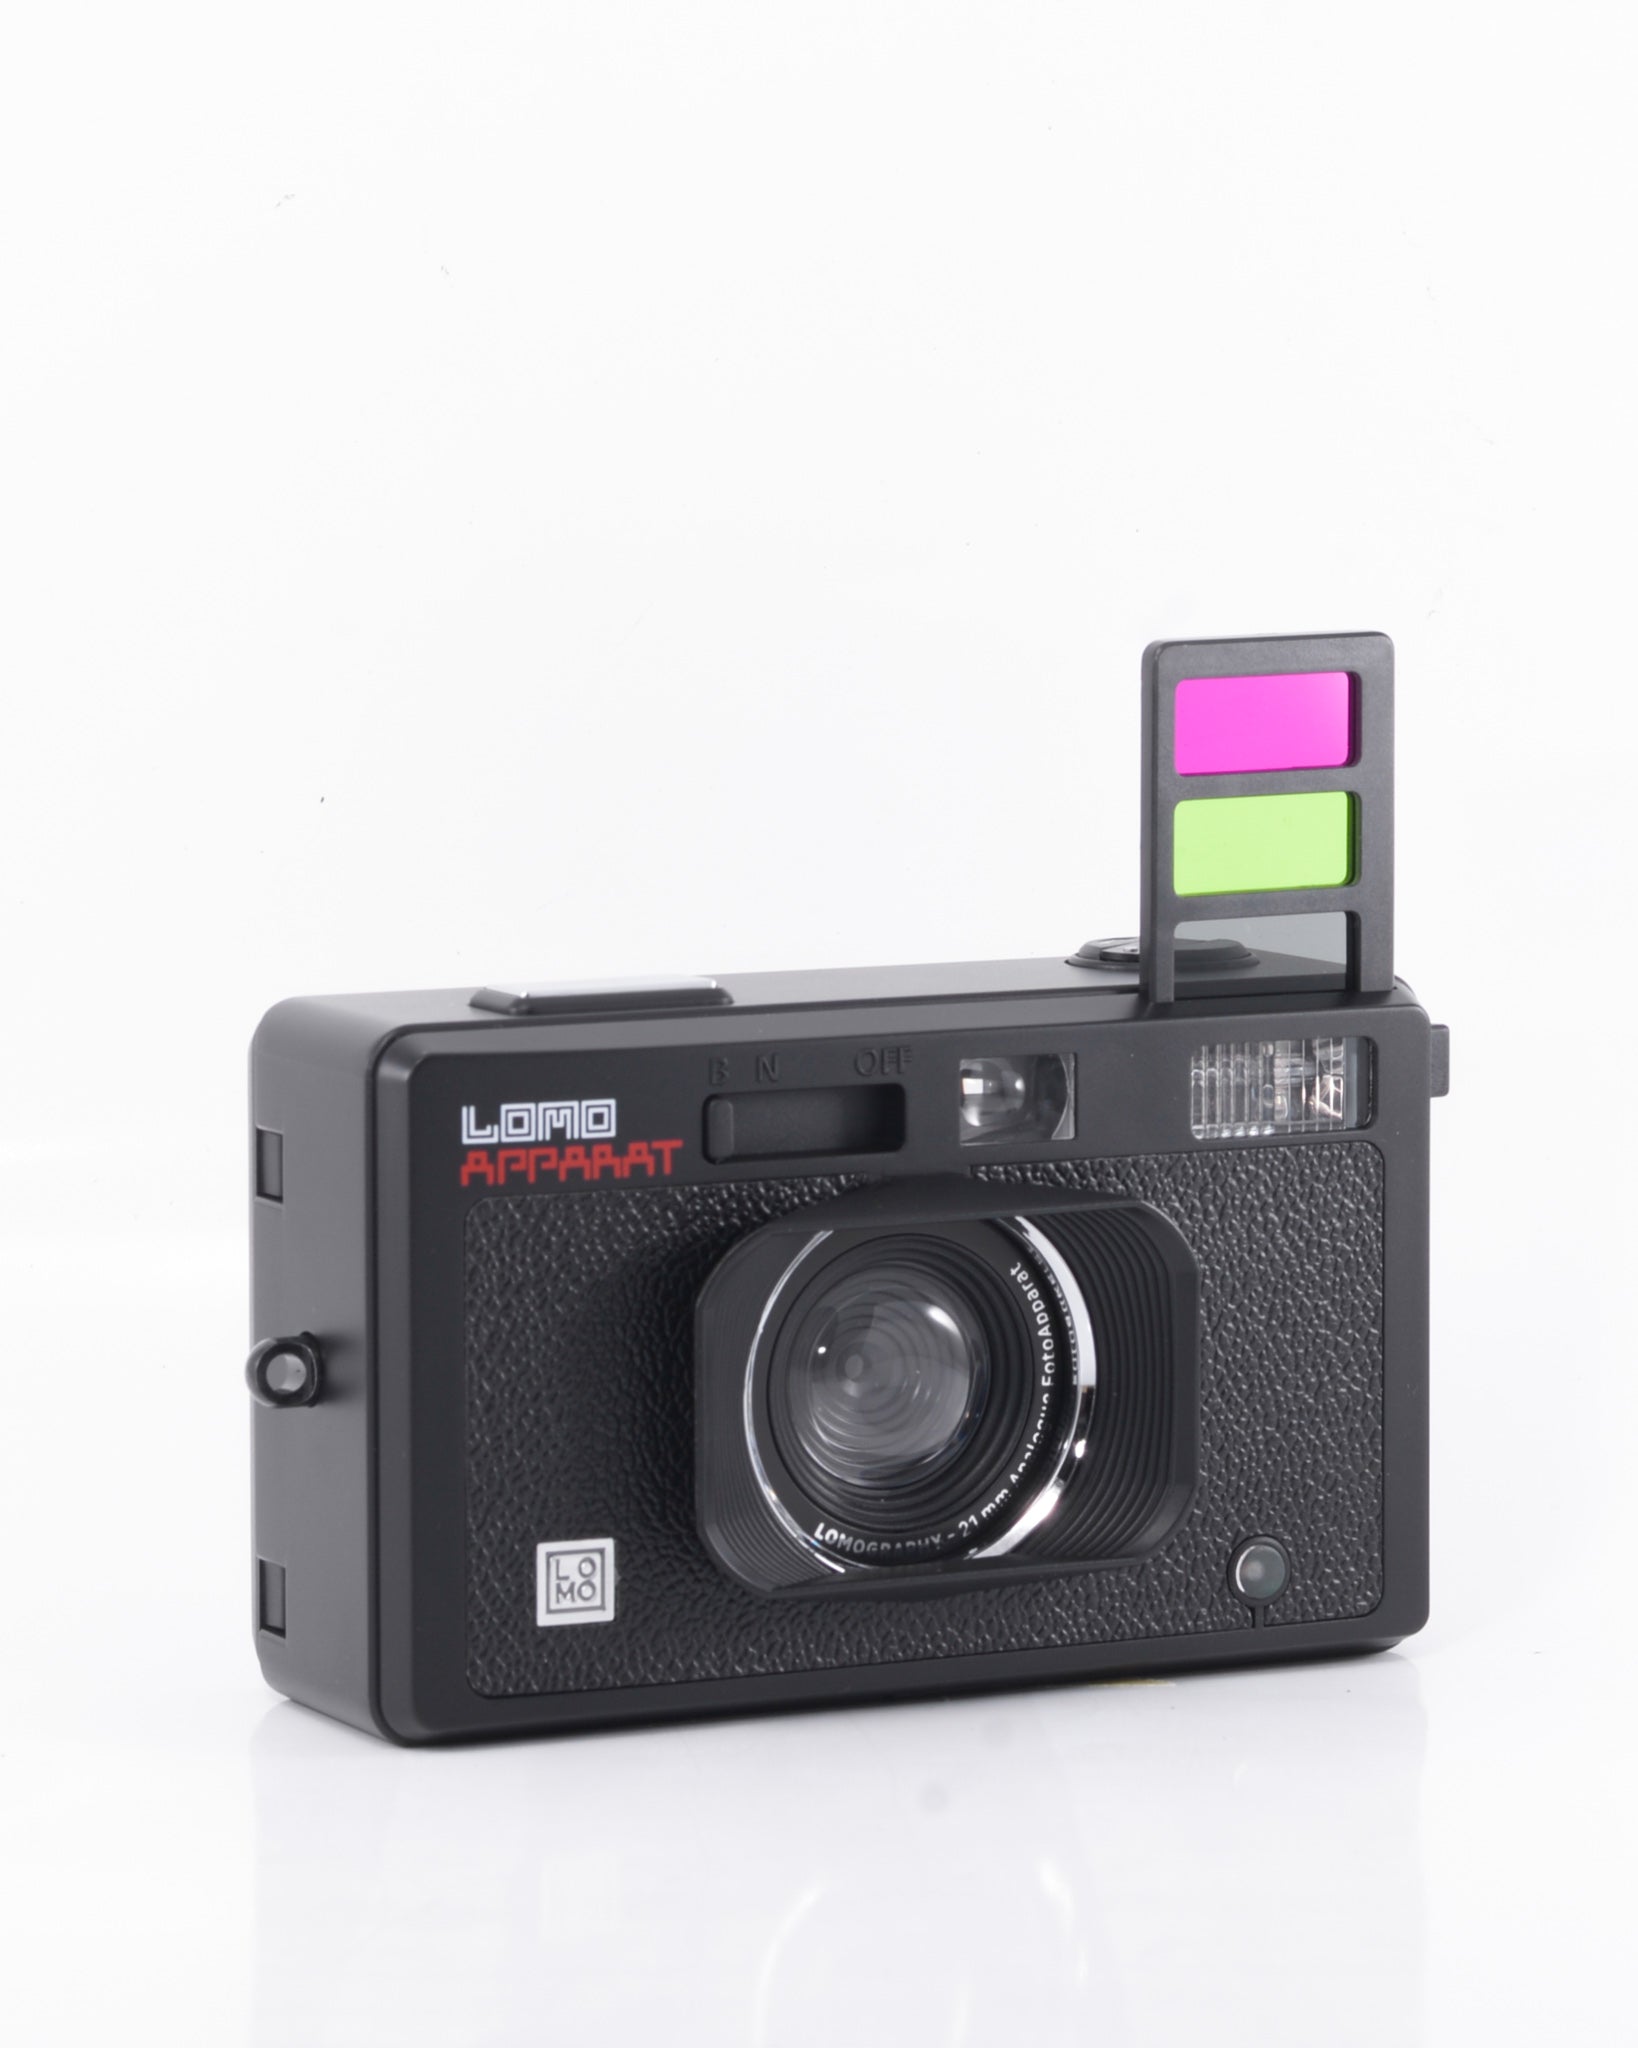 Lomography Lomo Apparat appareil photo argentique avec 21mm objectif